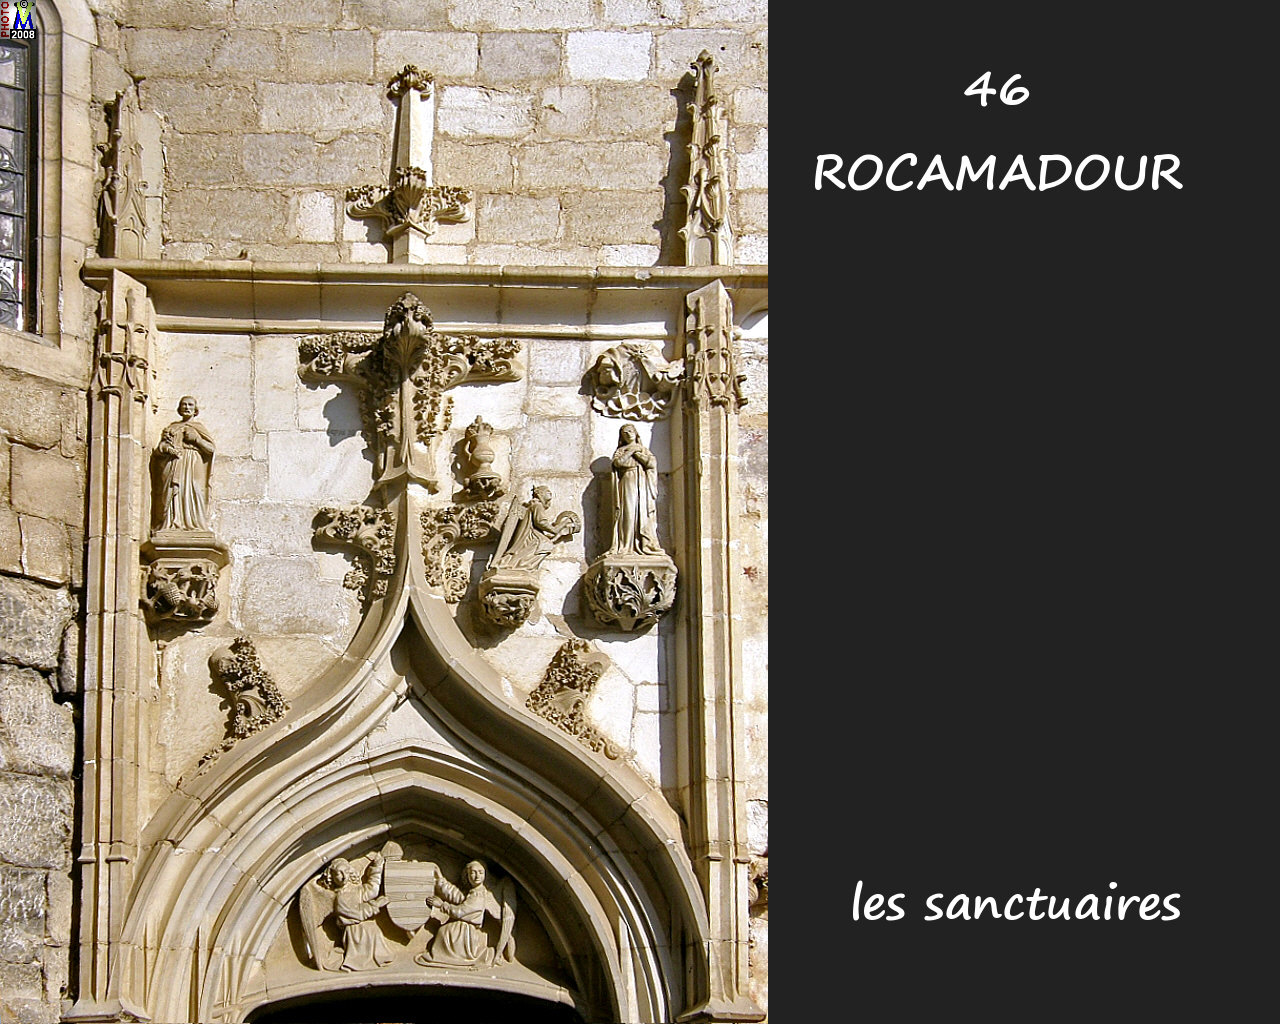 46ROCAMADOUR_sanctuaires_273.jpg